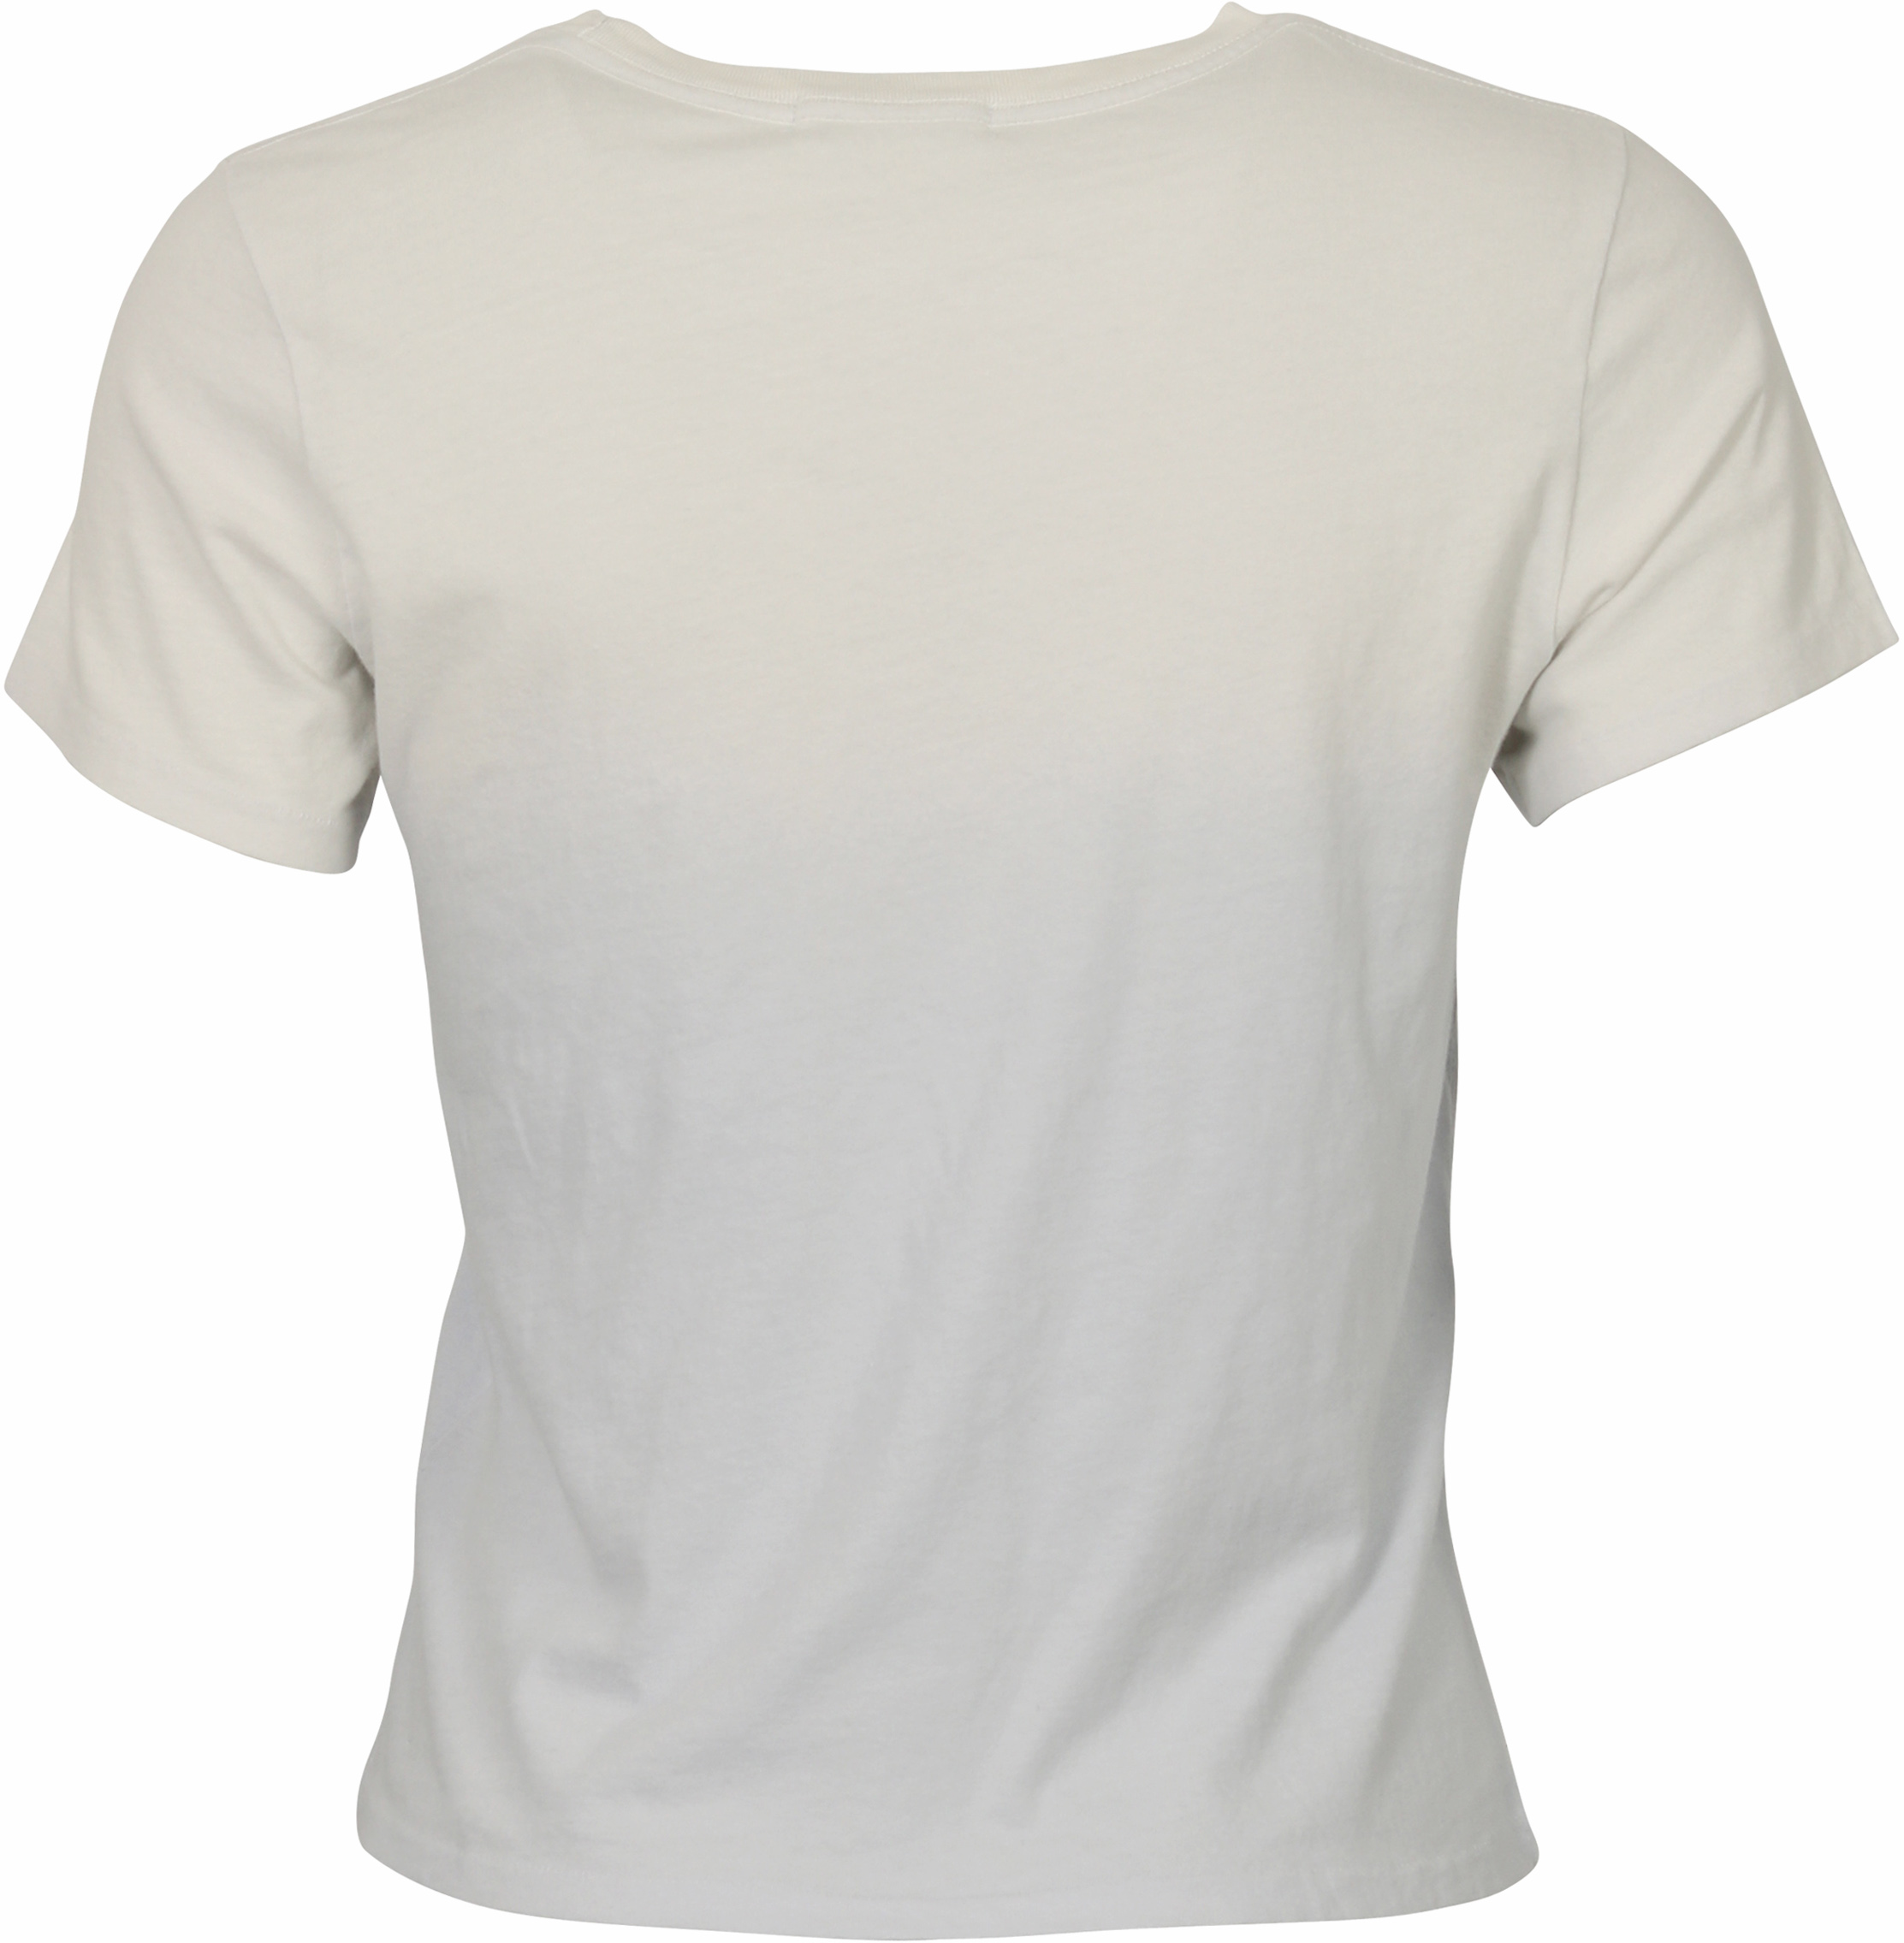 Agolde Boxy T-Shirt Linda Lightblue Degraded